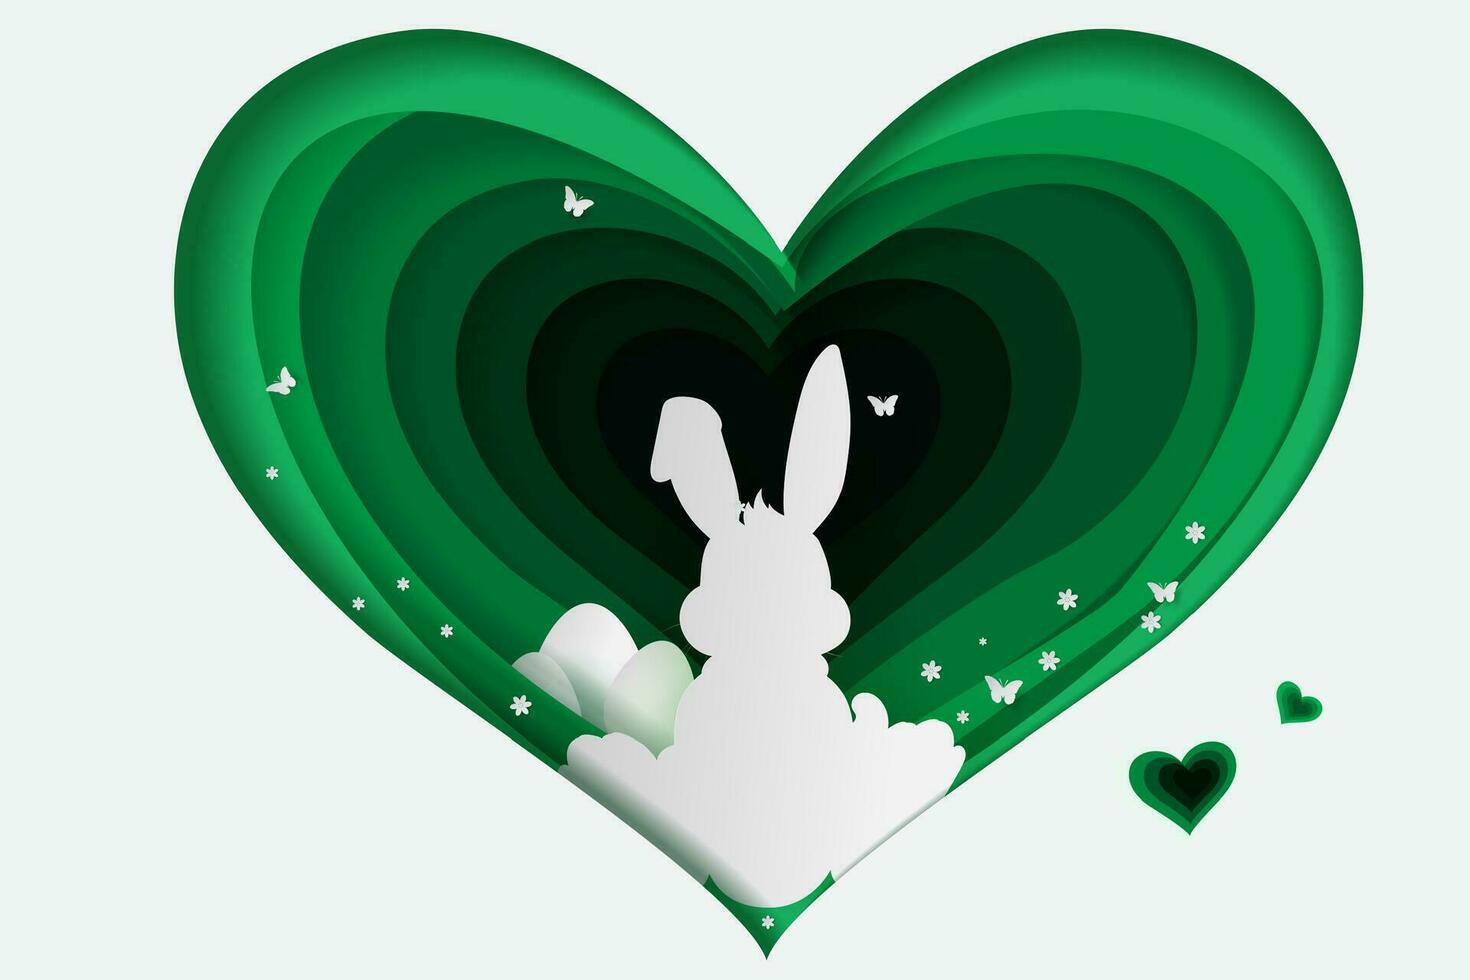 element minimaal vakantie konijn voor hart.blij Pasen dag eieren in groen gras met wit bloemen.vlinders vlieg lucht.creatief papier besnoeiing en ambacht stijl idee kaart achtergrond.vorm kromme konijn.eco vector